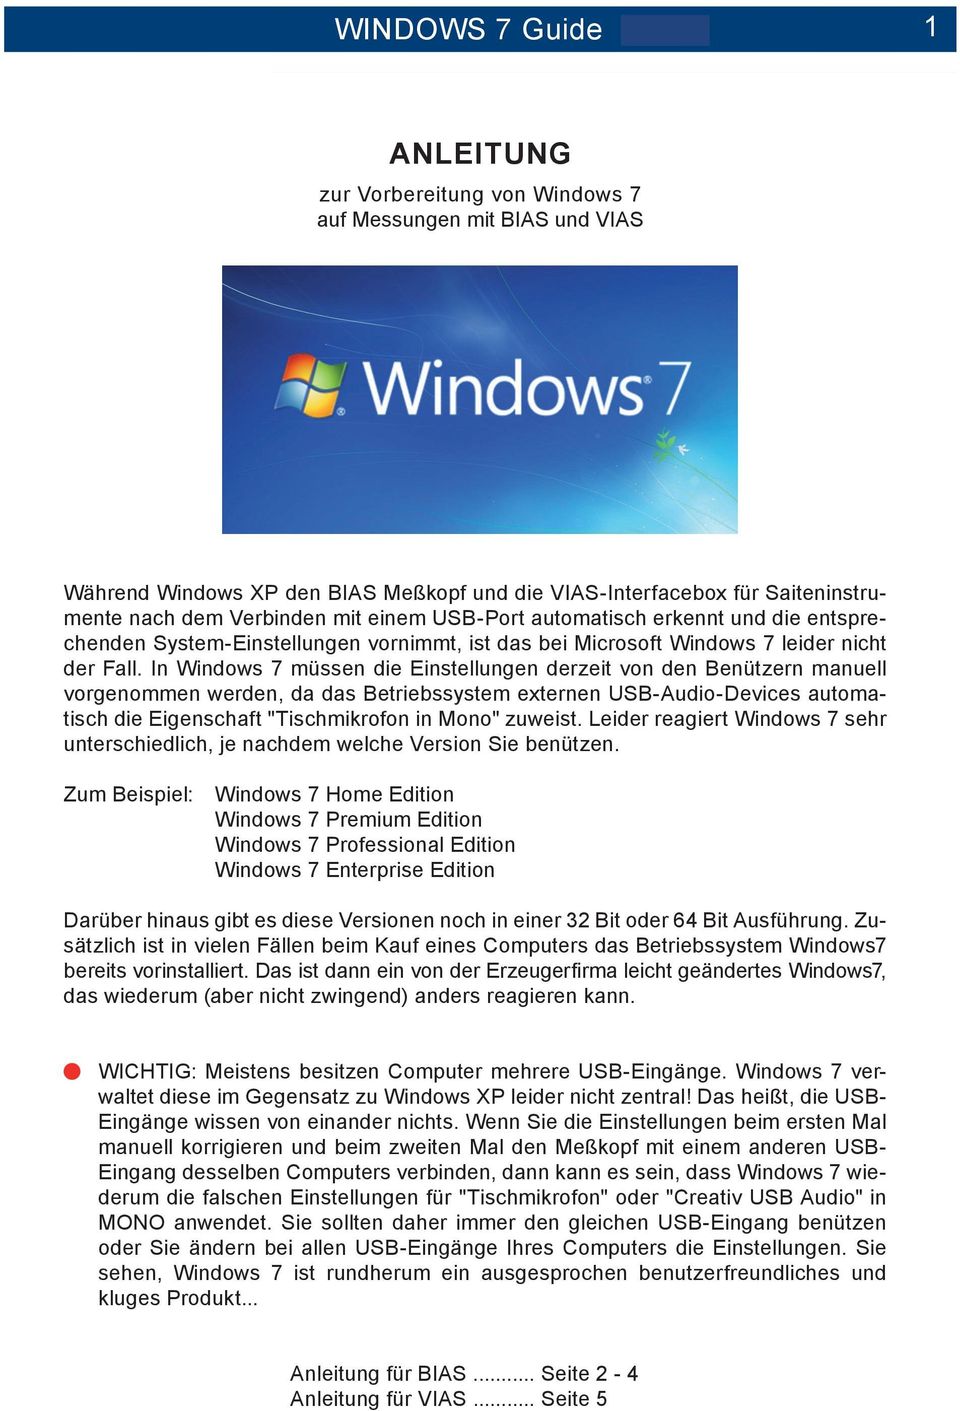 In Windows 7 müssen die Einstellungen derzeit von den Benützern manuell vorgenommen werden, da das Betriebssystem externen USB-Audio-Devices automatisch die Eigenschaft "Tischmikrofon in Mono"